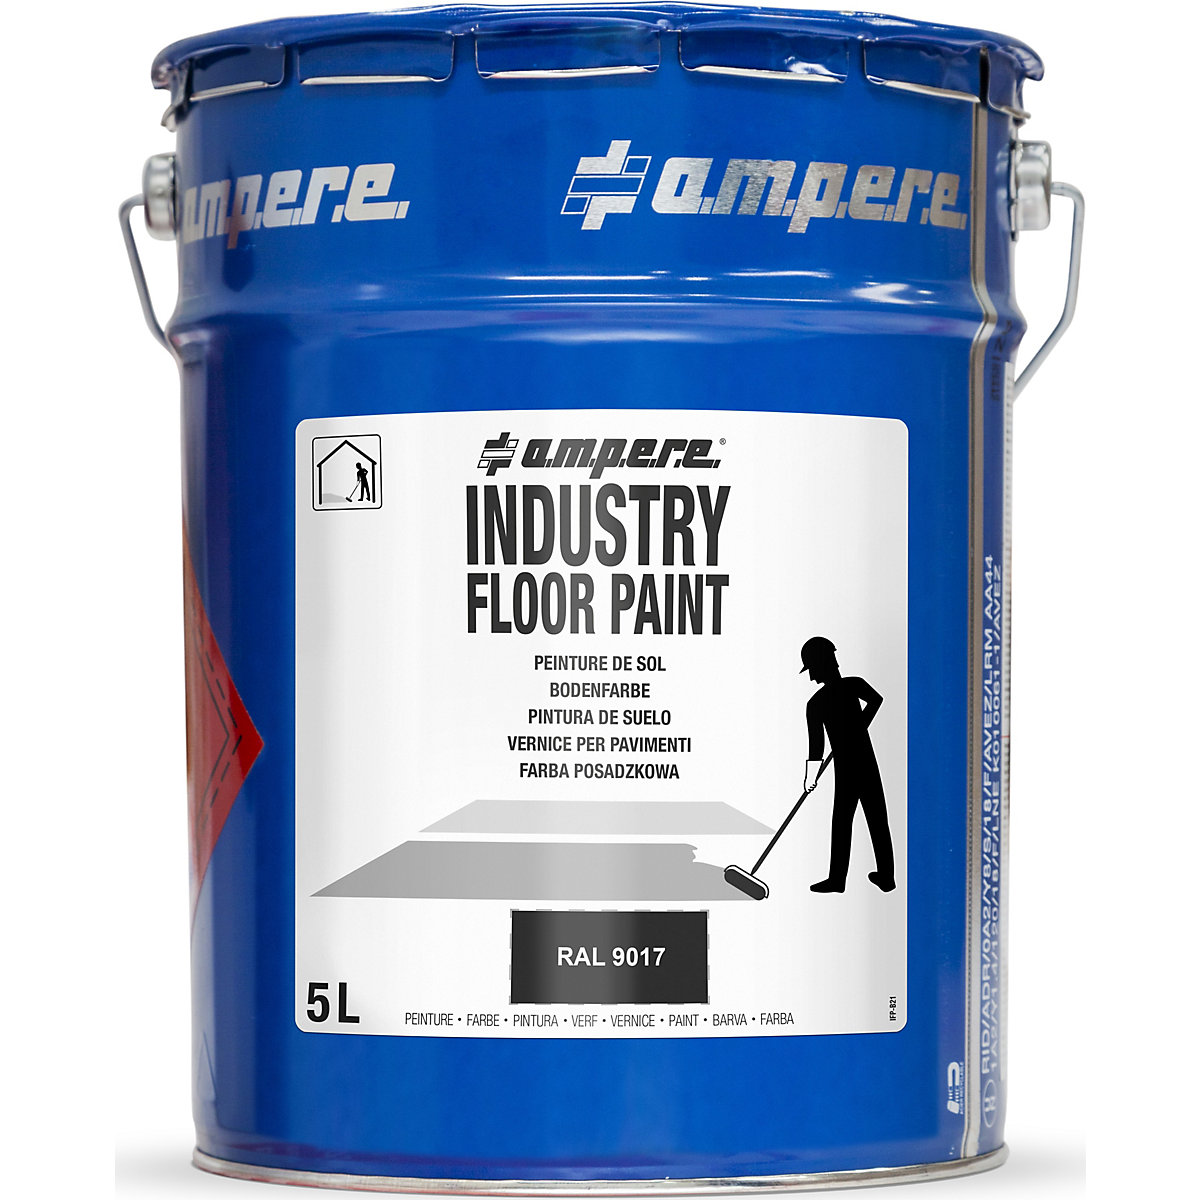 Farba do znakowania podłoża Industry Floor Paint® – Ampere, poj. 5 l, czarna-5